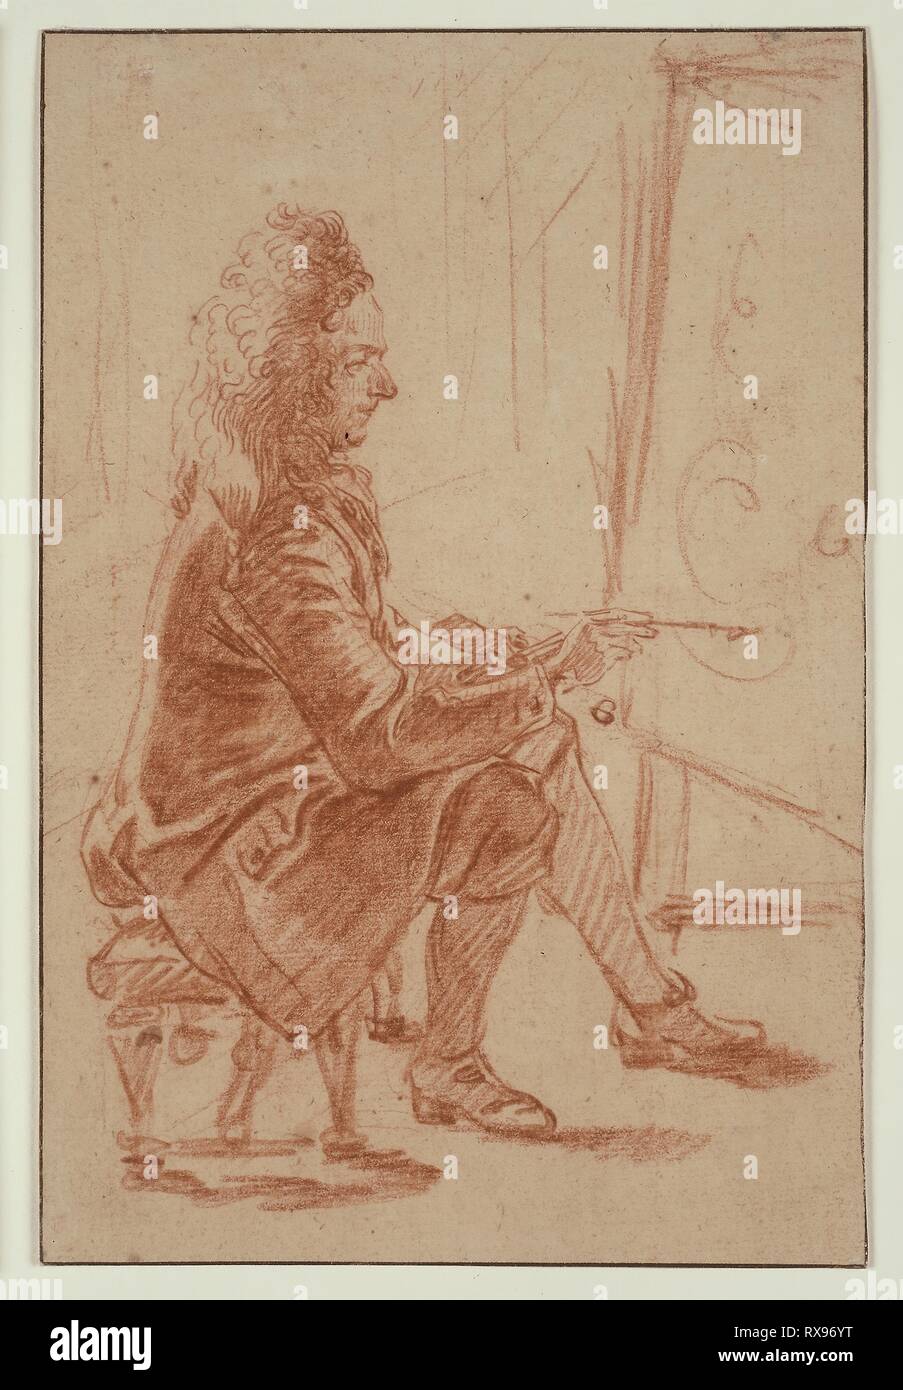 Él mismo sitio oscuro Un pintor Bewigged (posiblemente Claude Audran), sentado en su caballete,  visto de perfil. Jean Antoine Watteau; francés, 1684-1721. Fecha:  1704-1714. Dimensiones: 201 x 134 mm. Tiza roja en buff sentó el papel,